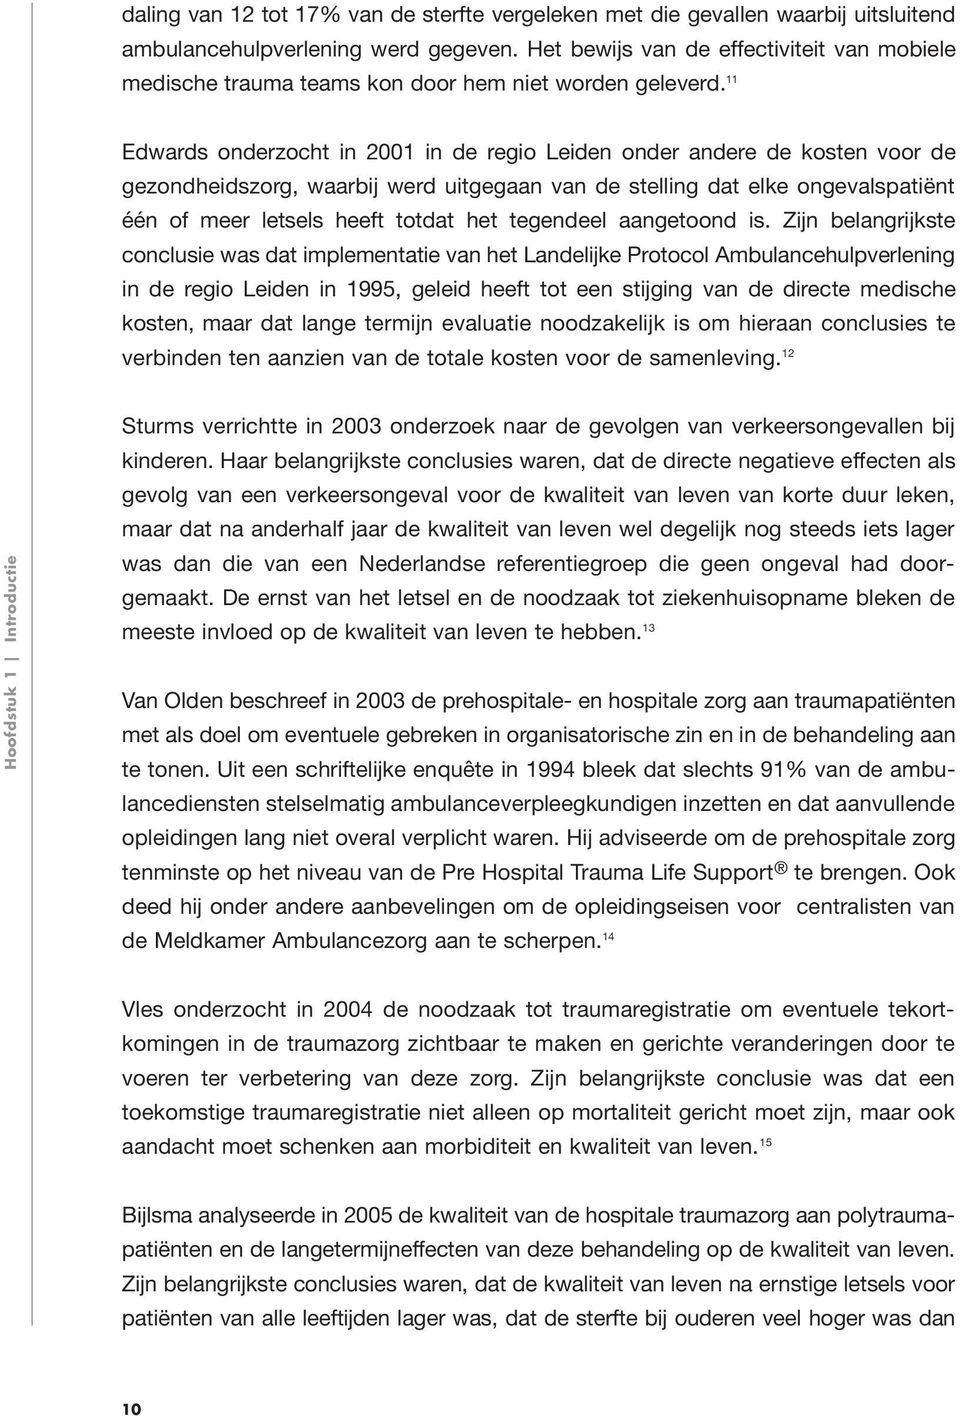 11 Edwards onderzocht in 2001 in de regio Leiden onder andere de kosten voor de gezondheidszorg, waarbij werd uitgegaan van de stelling dat elke ongevalspatiënt één of meer letsels heeft totdat het